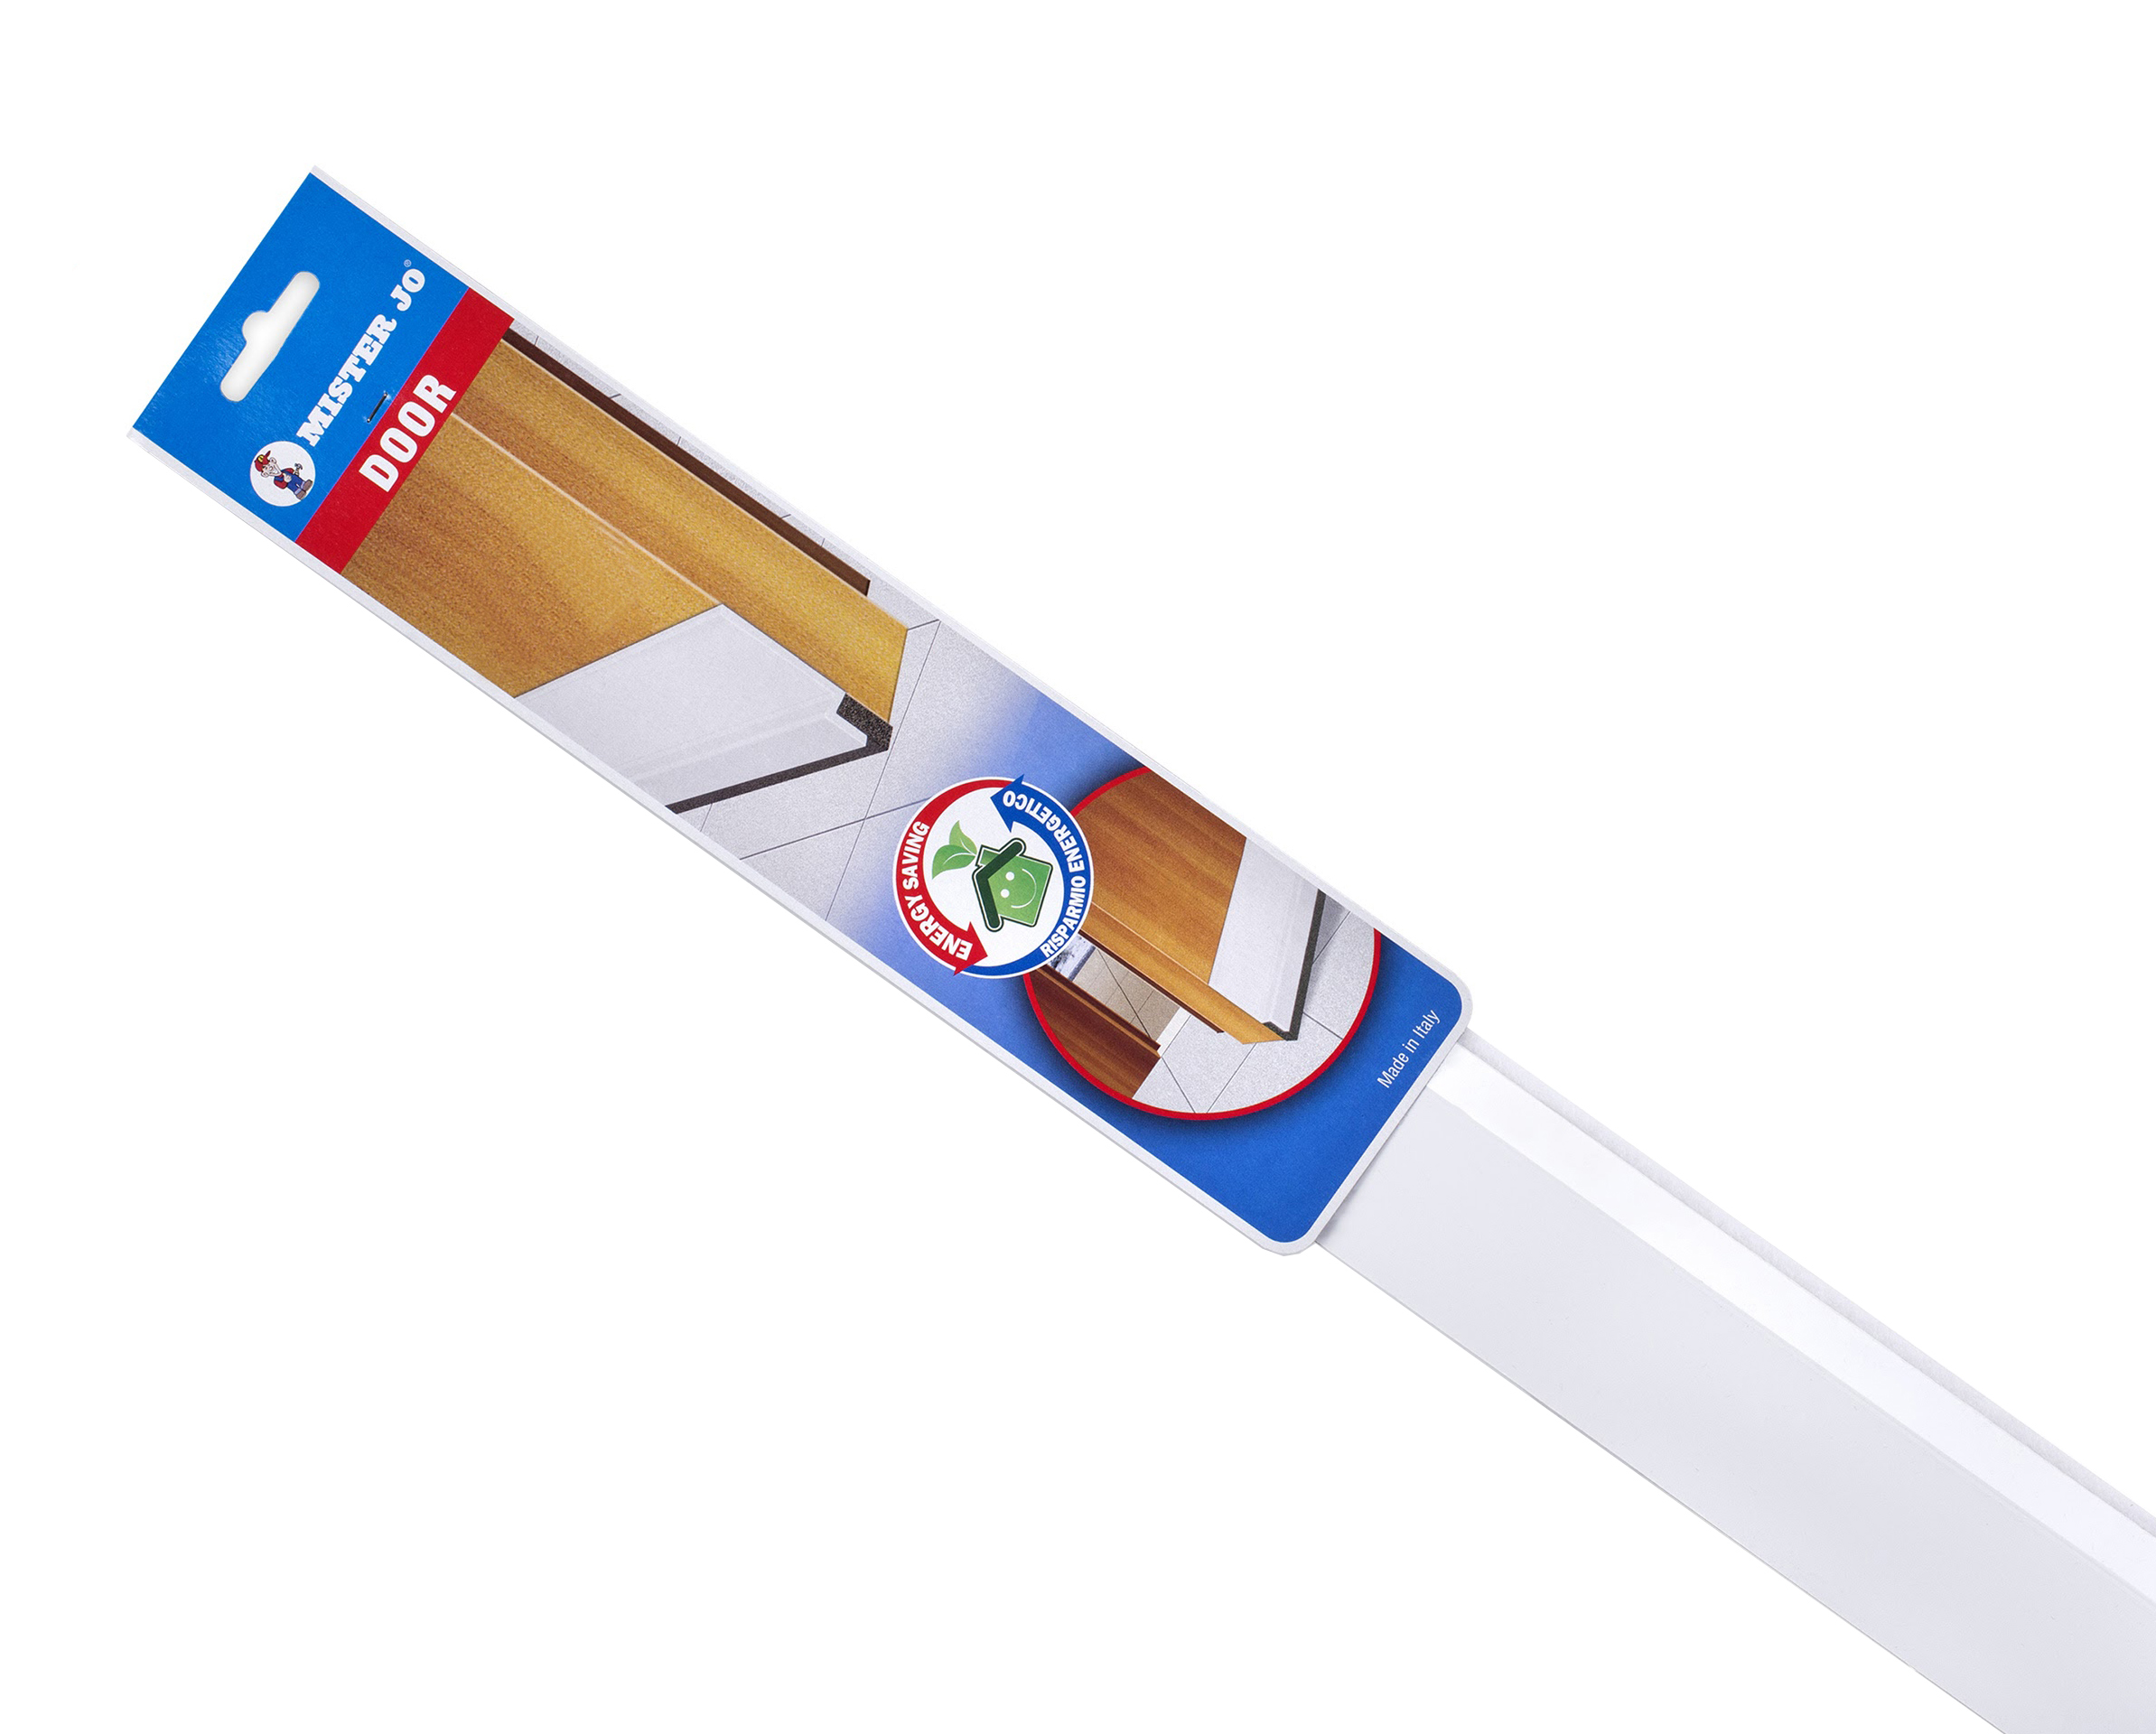 Paraspifferi sottoporta Stafflex in PVC rigido con spazzolino 120 cm bianco